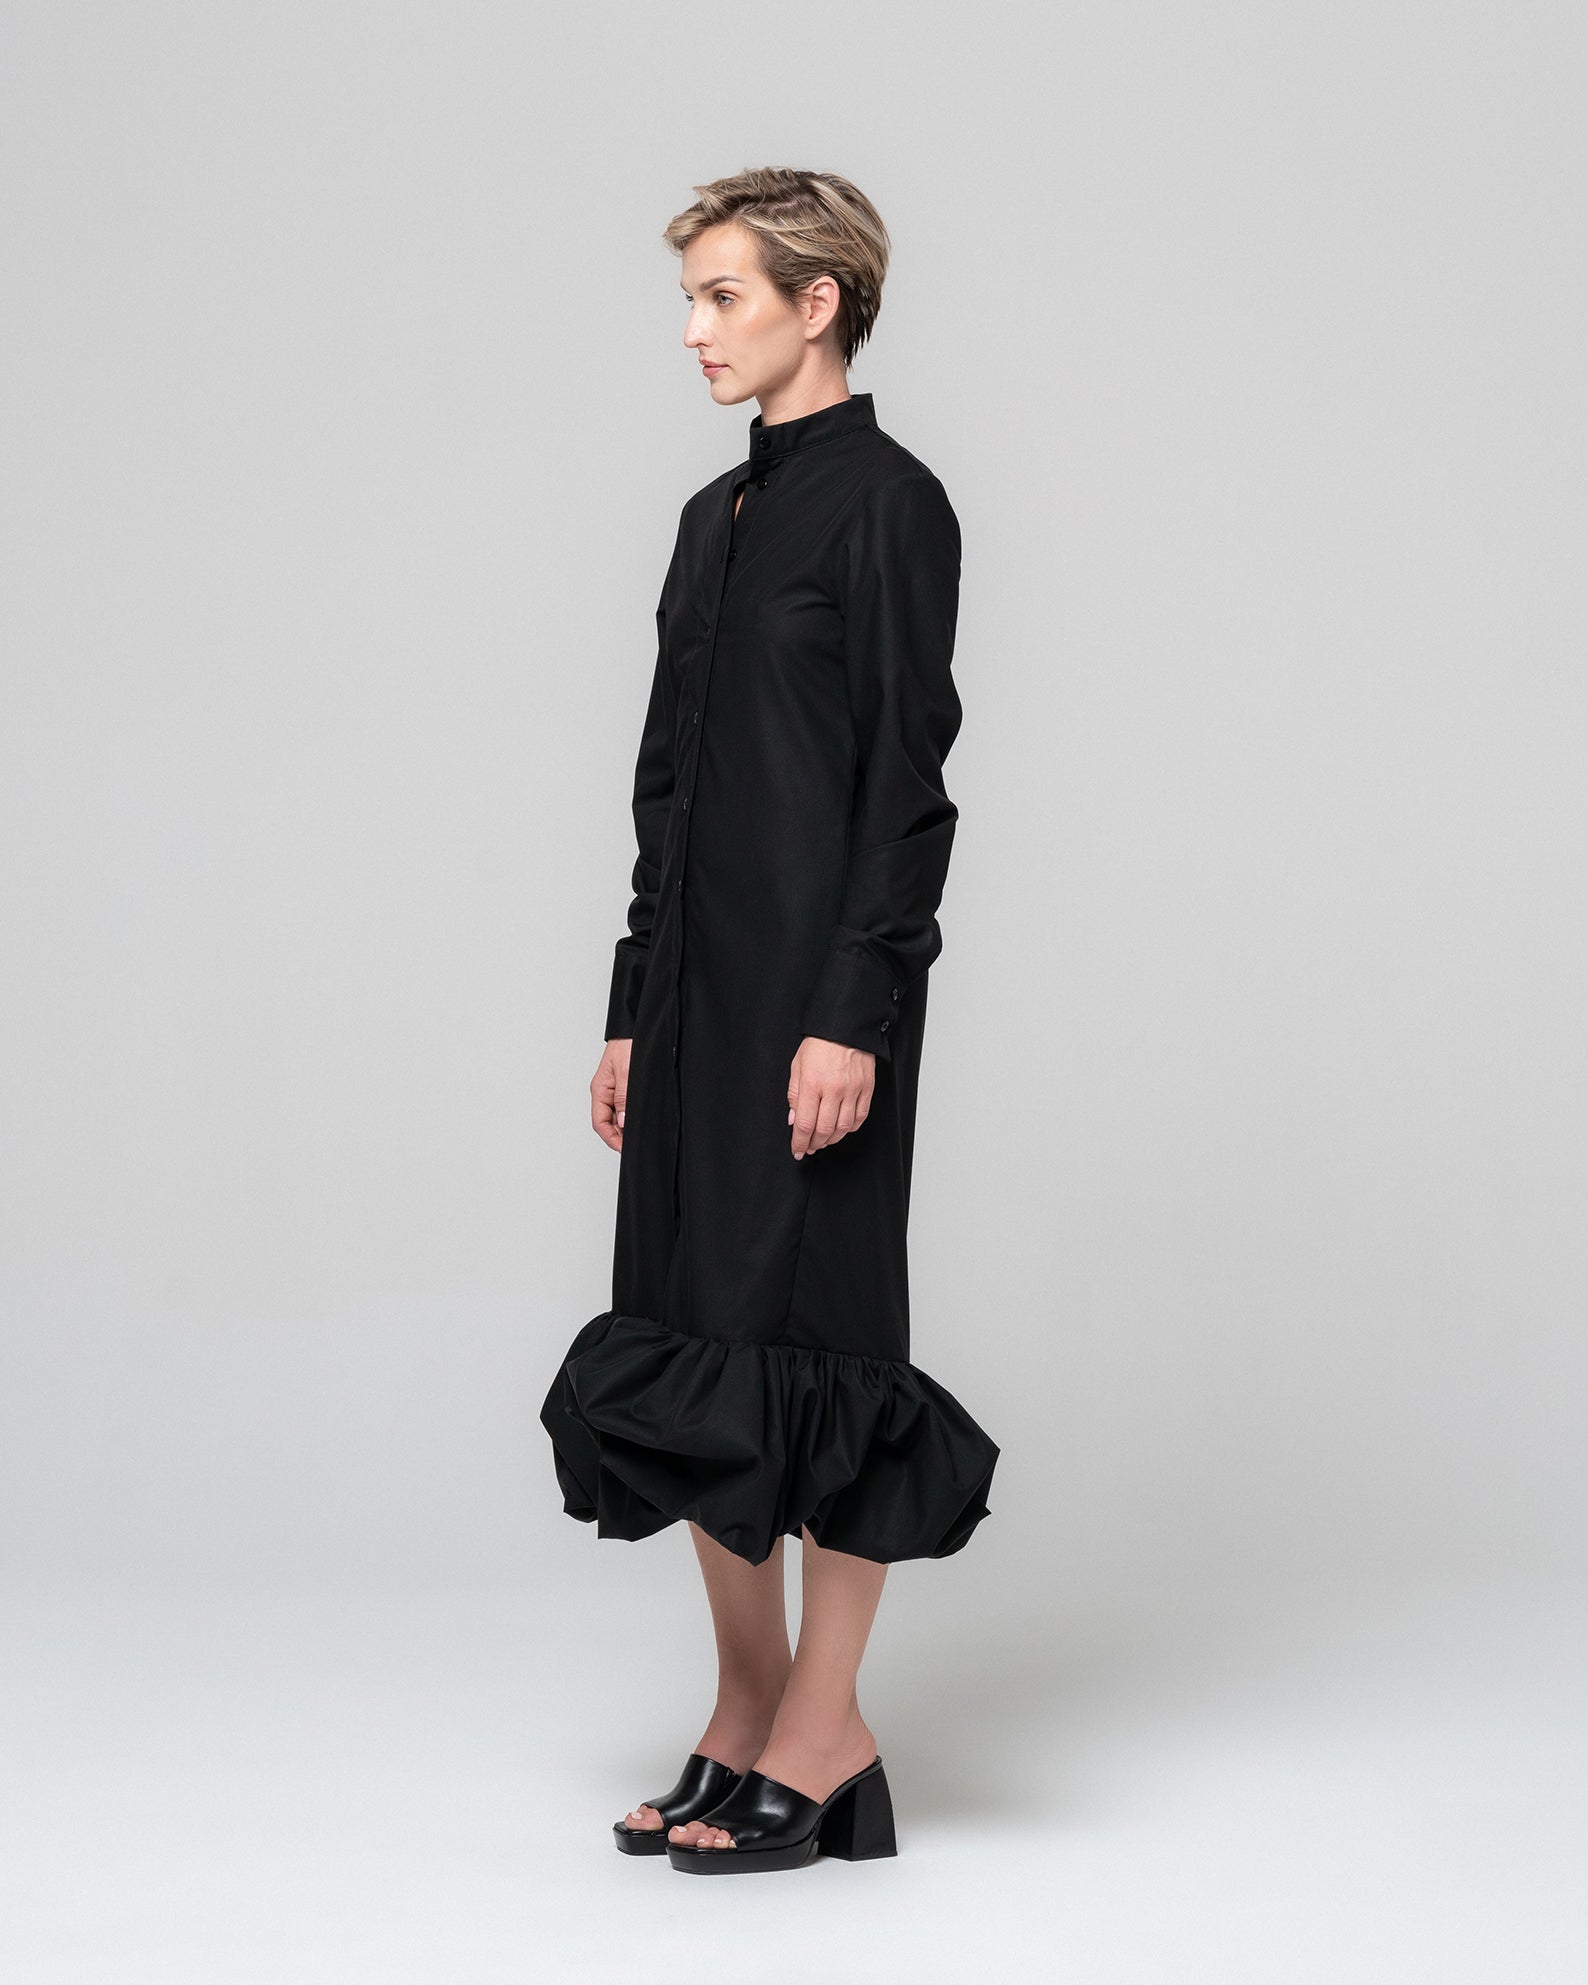 SOLA BLACK SHIRT DRESS - RONI HELOU